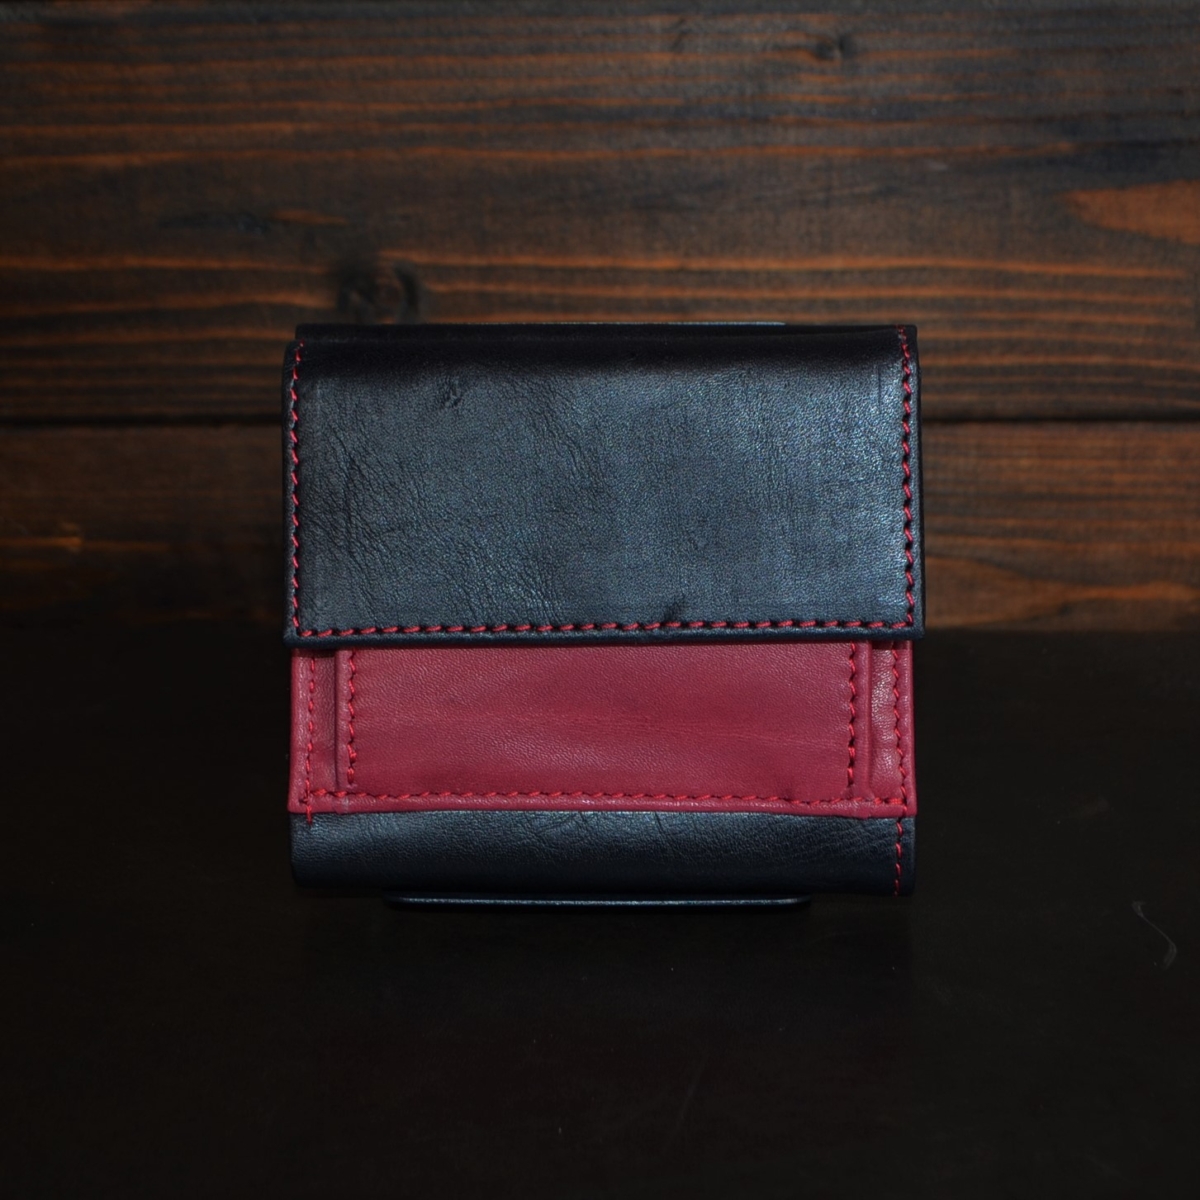 神戸元町の創作鞄槌井が手作りしたコンパクト財布のコンビカラー